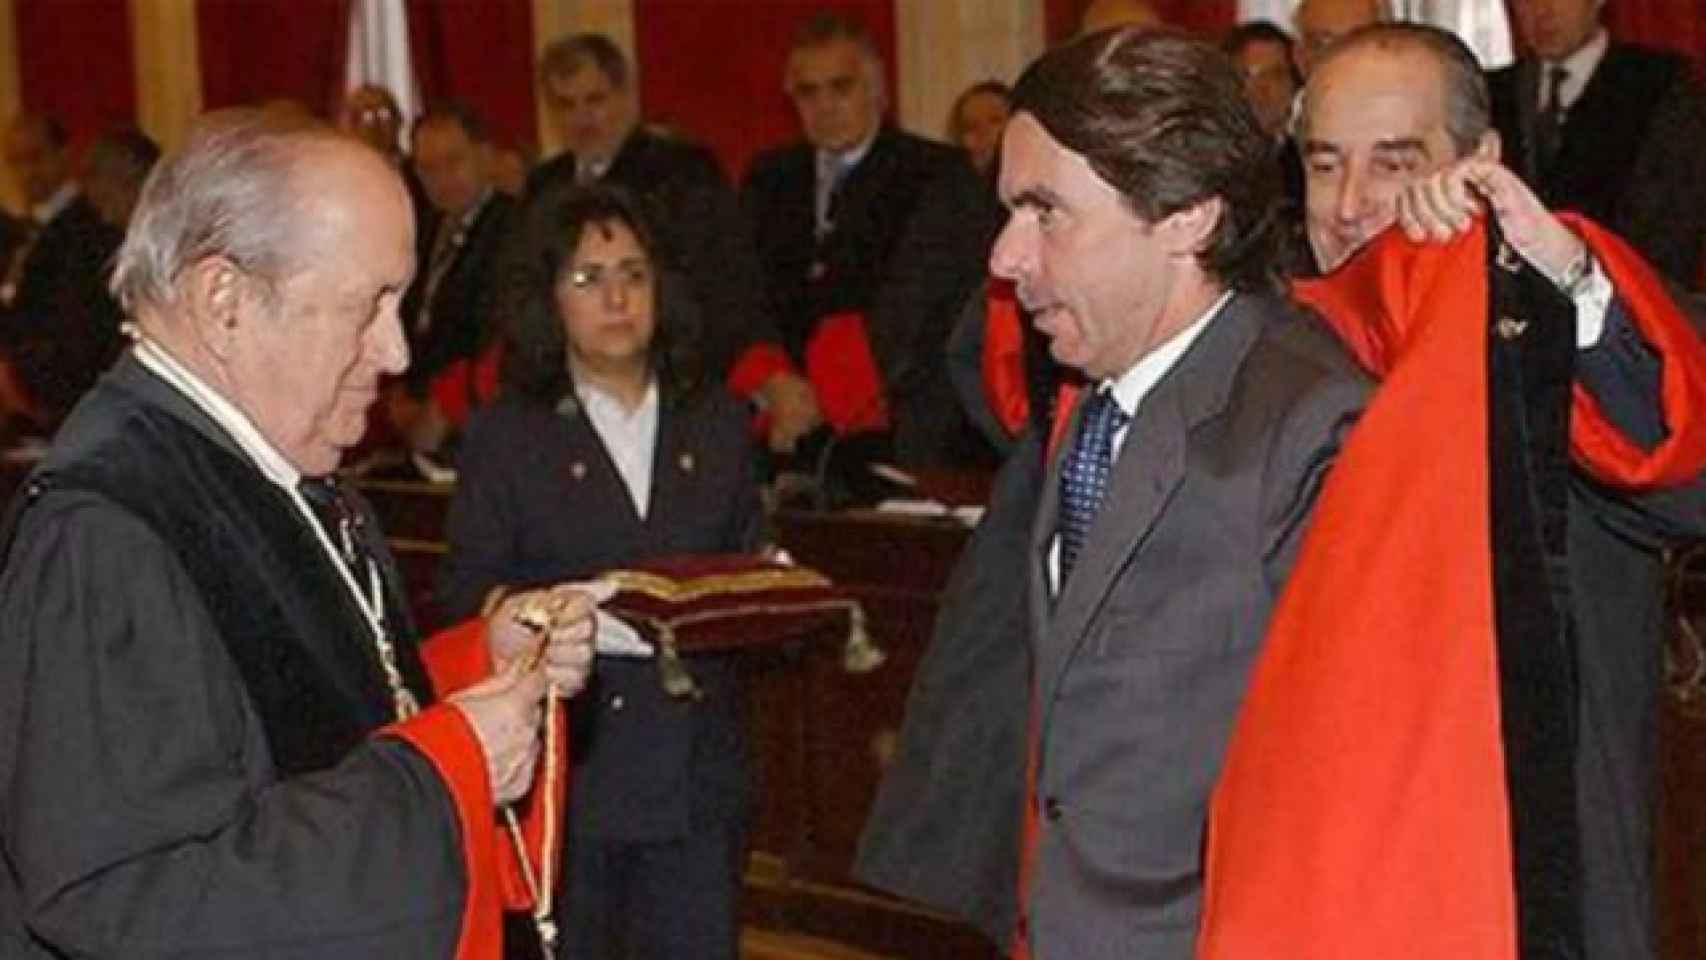 Puig de la Bellacasa apadrinó a Aznar como miembro del Consejo de Estado, junto a Landelino Lavilla.